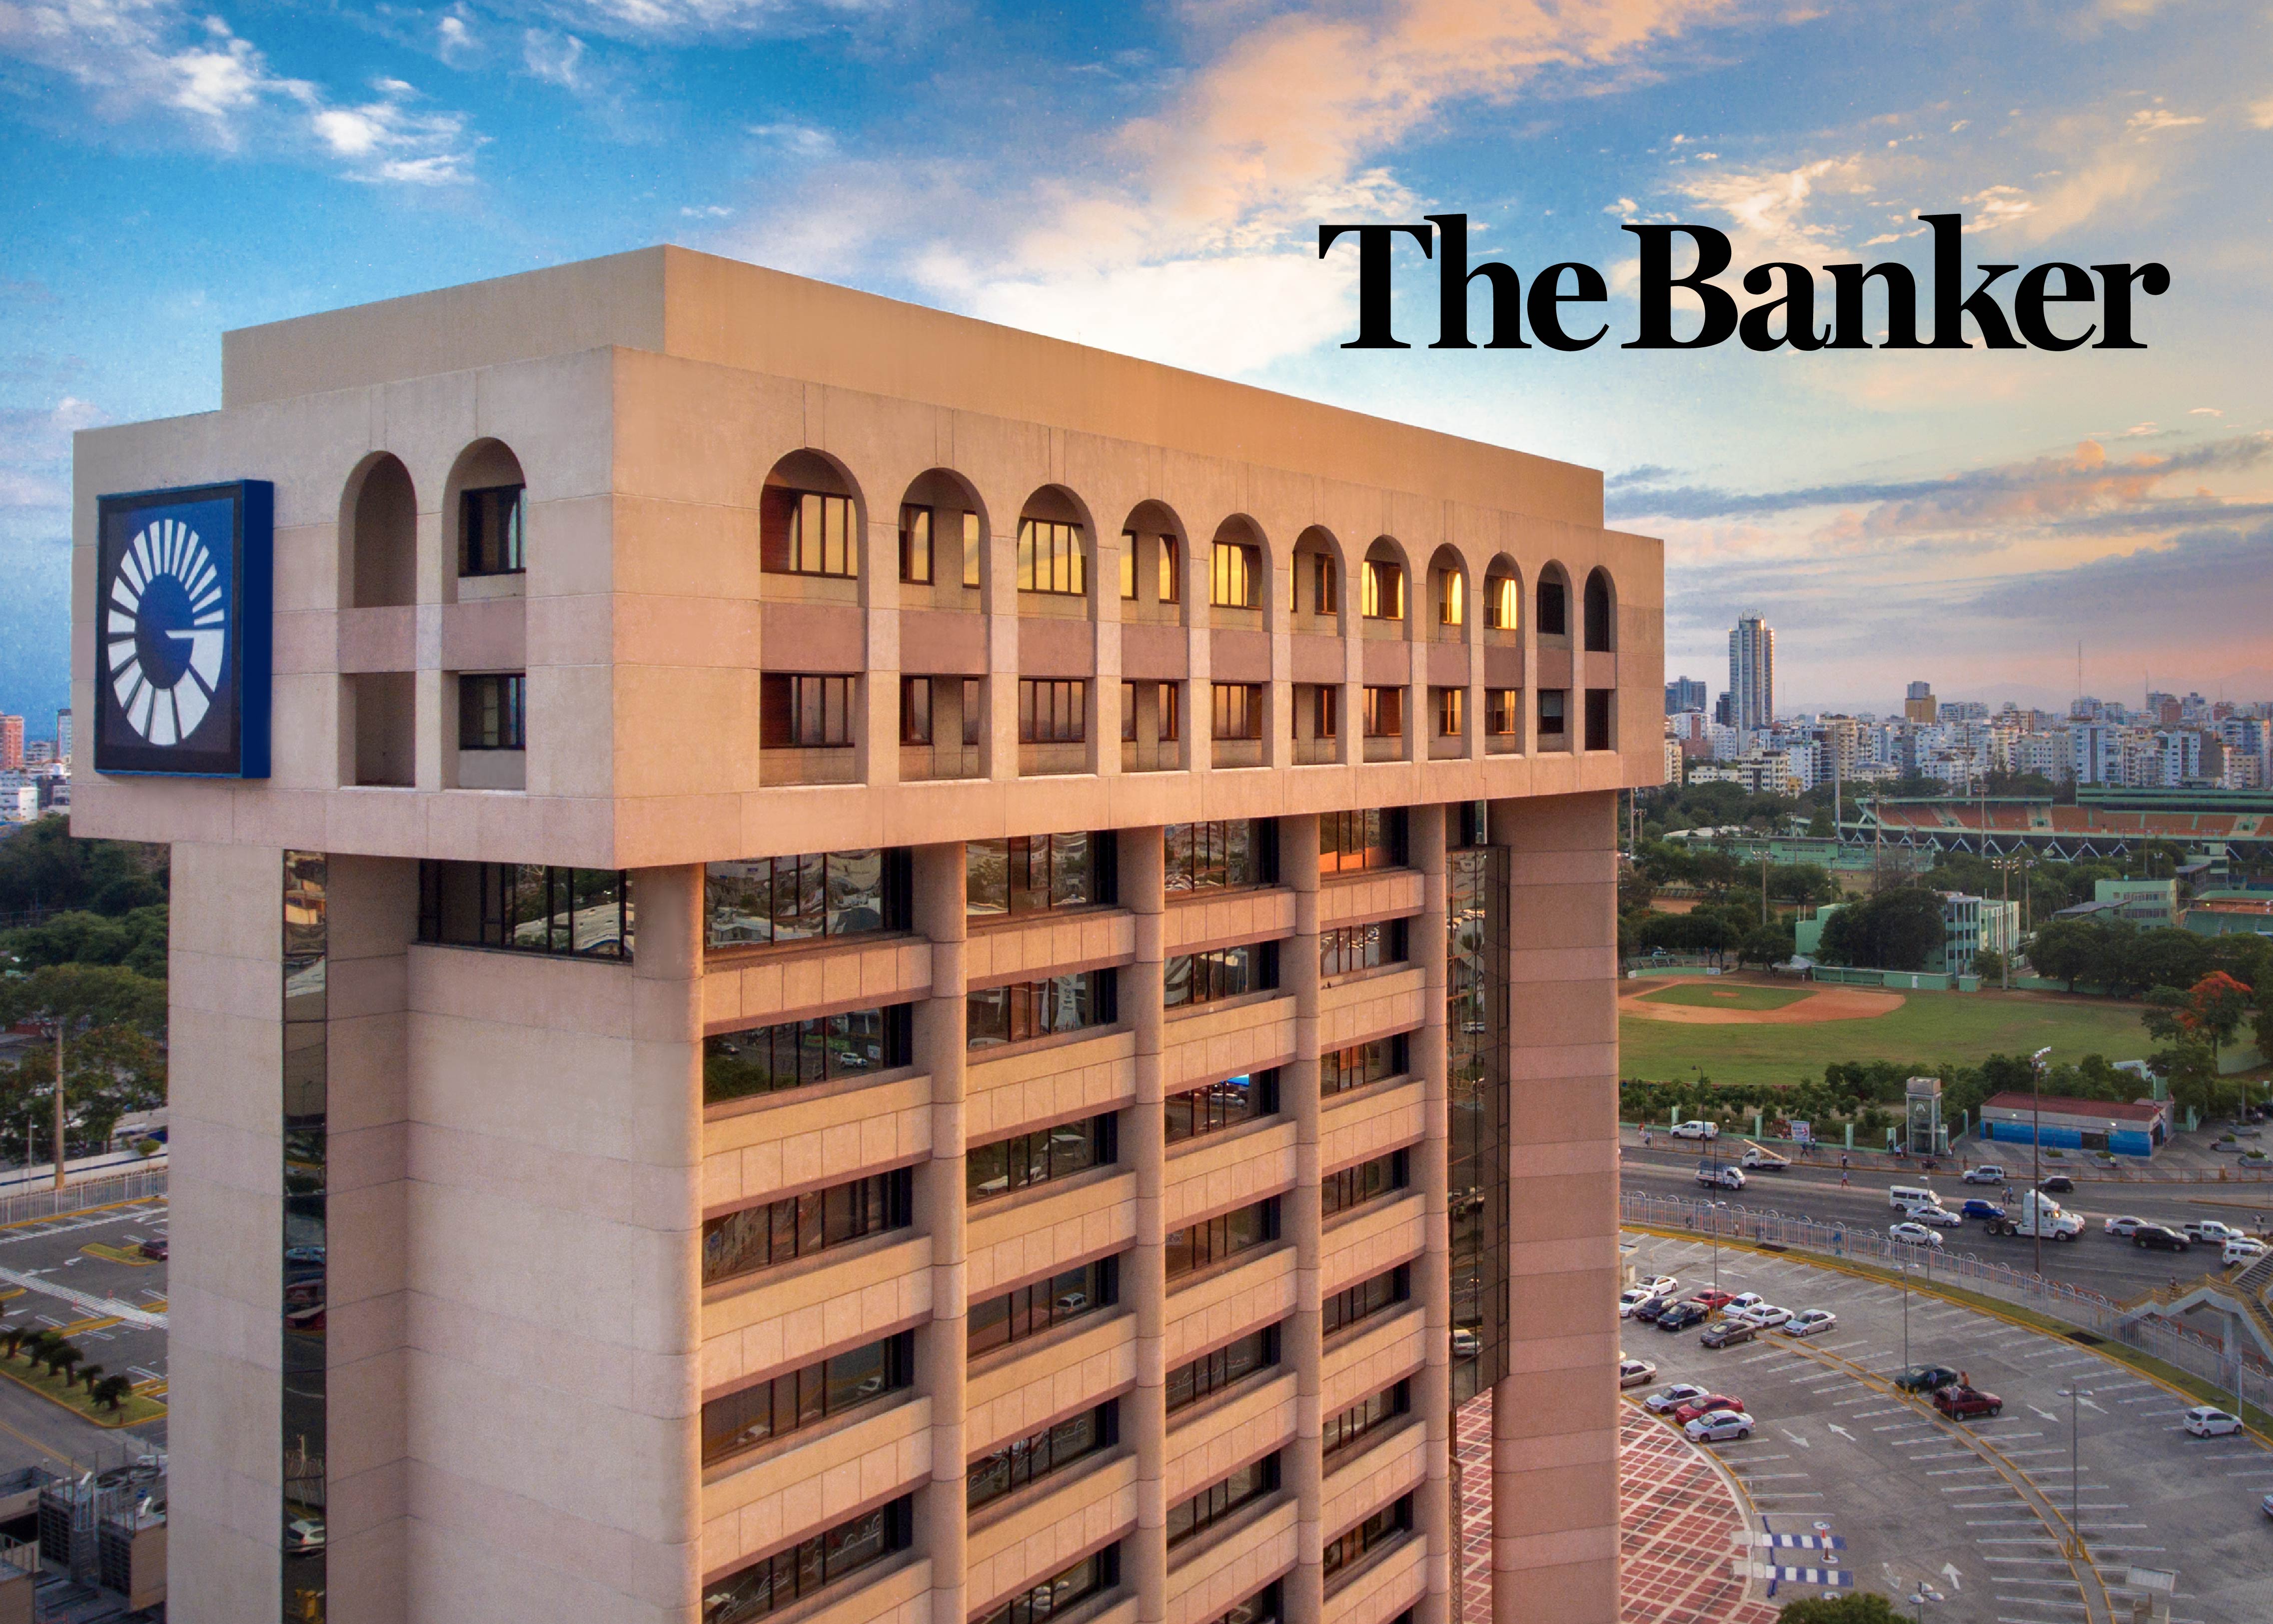 The Banker elige al Popular primer banco de RD y cuarto del Caribe en fortaleza financiera